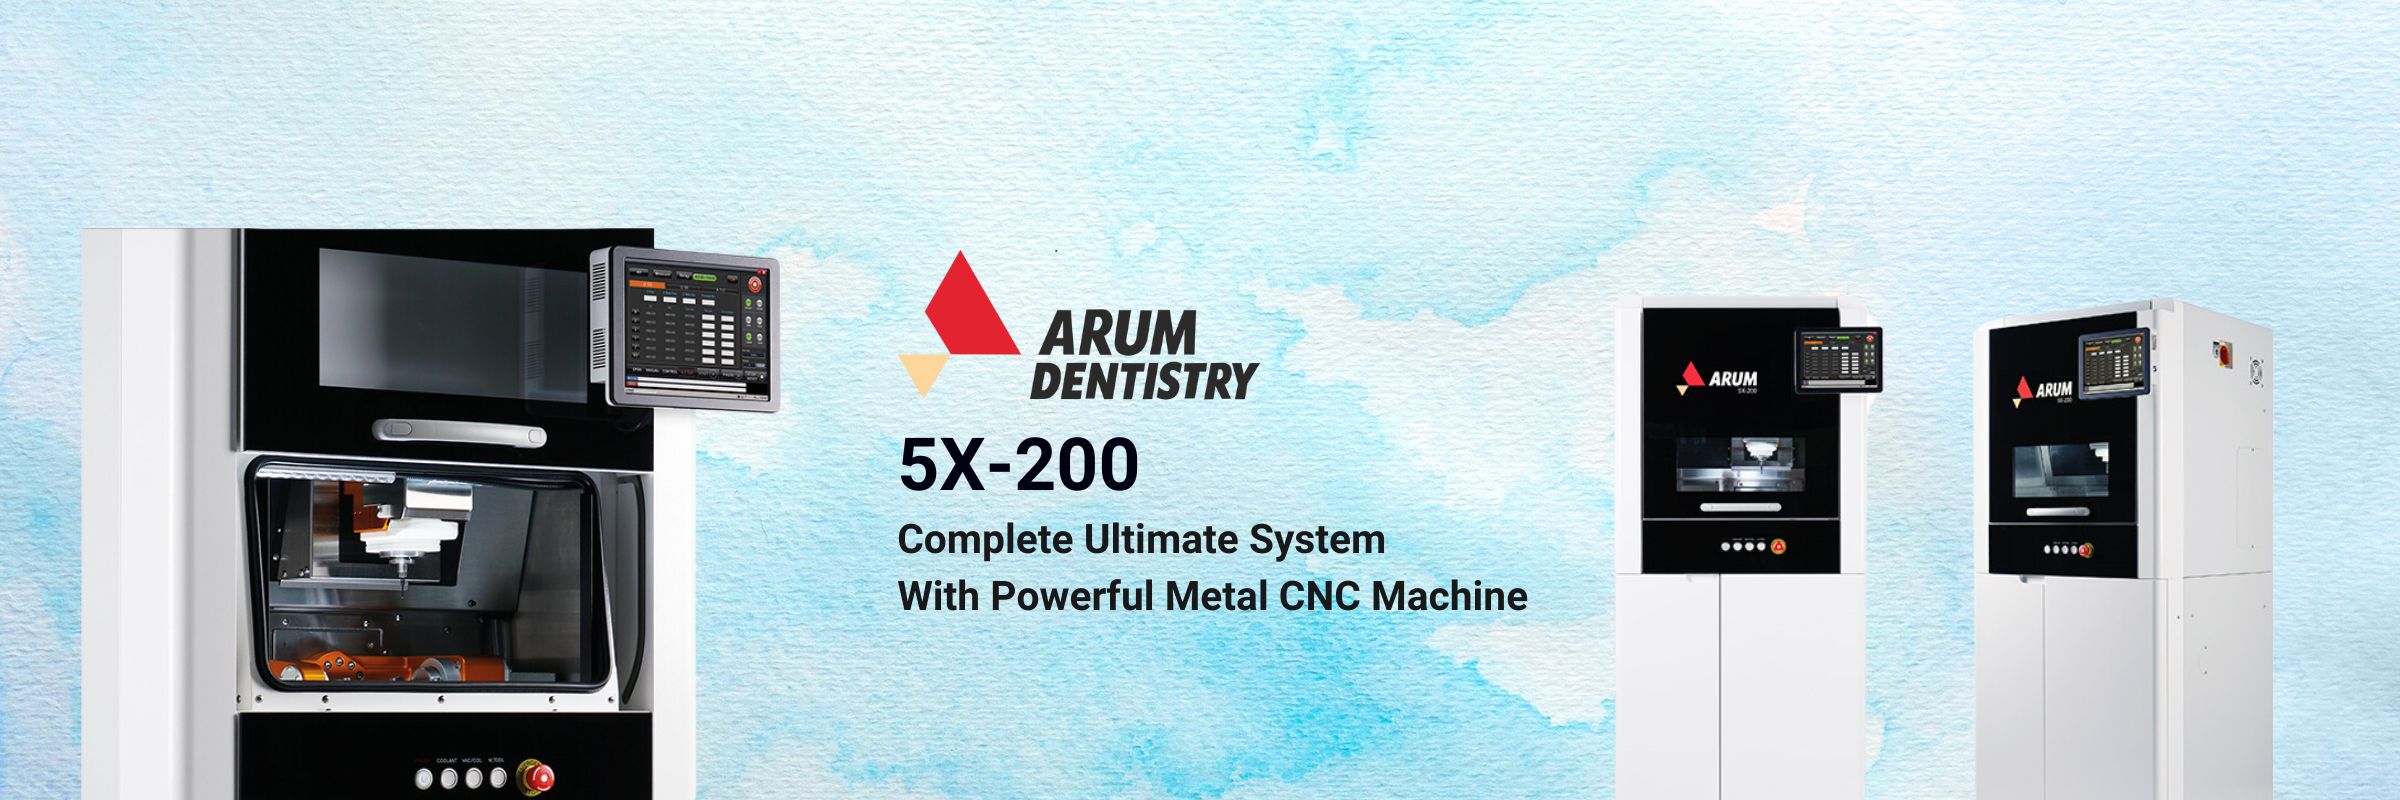 Arum 5x-200 Banner